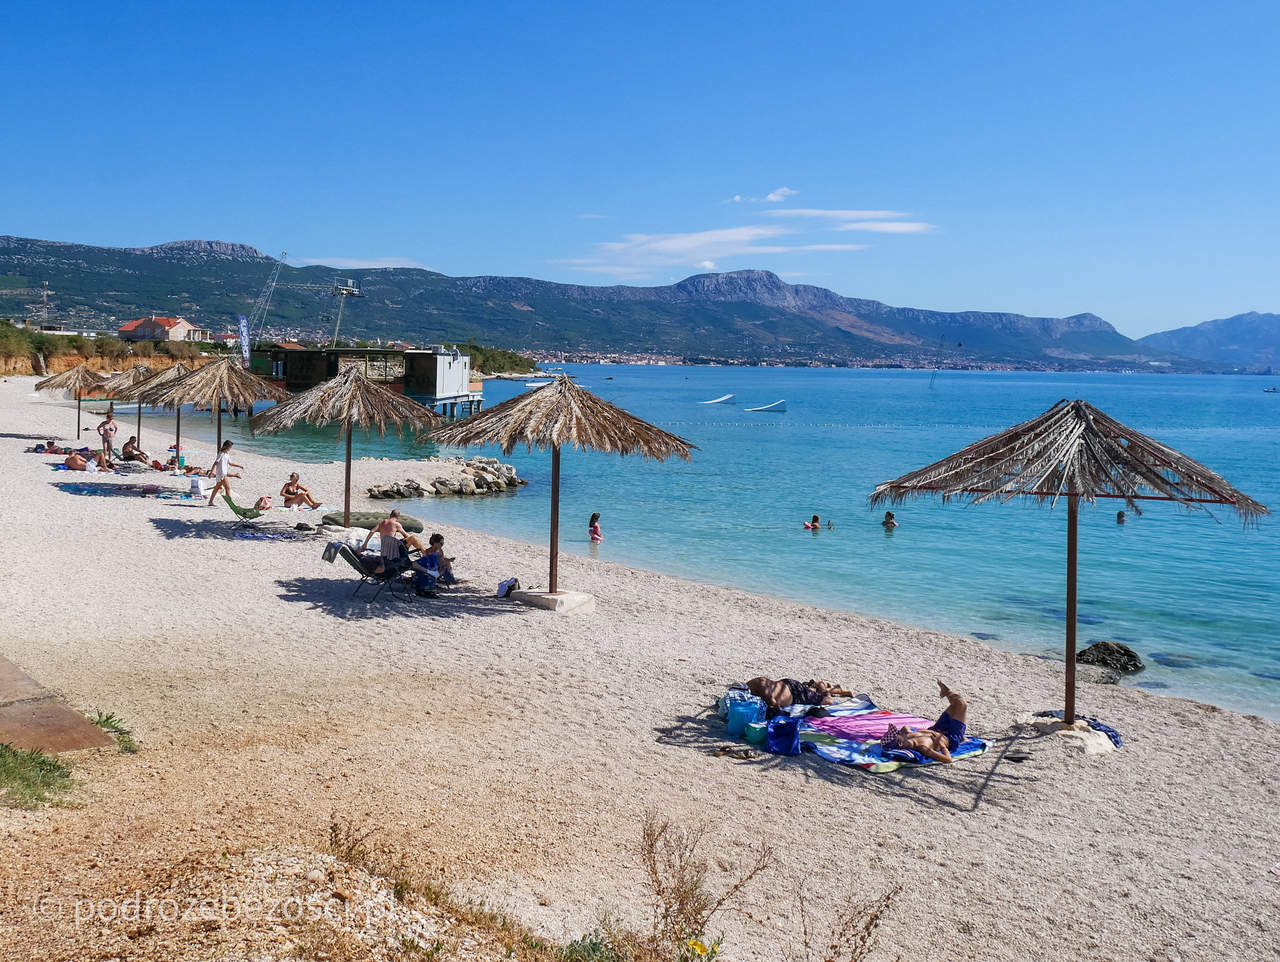 kastela plaze plaza beaches atrakcje co warto zwiedzic zobaczyc w kaszteli chorwacja croatia